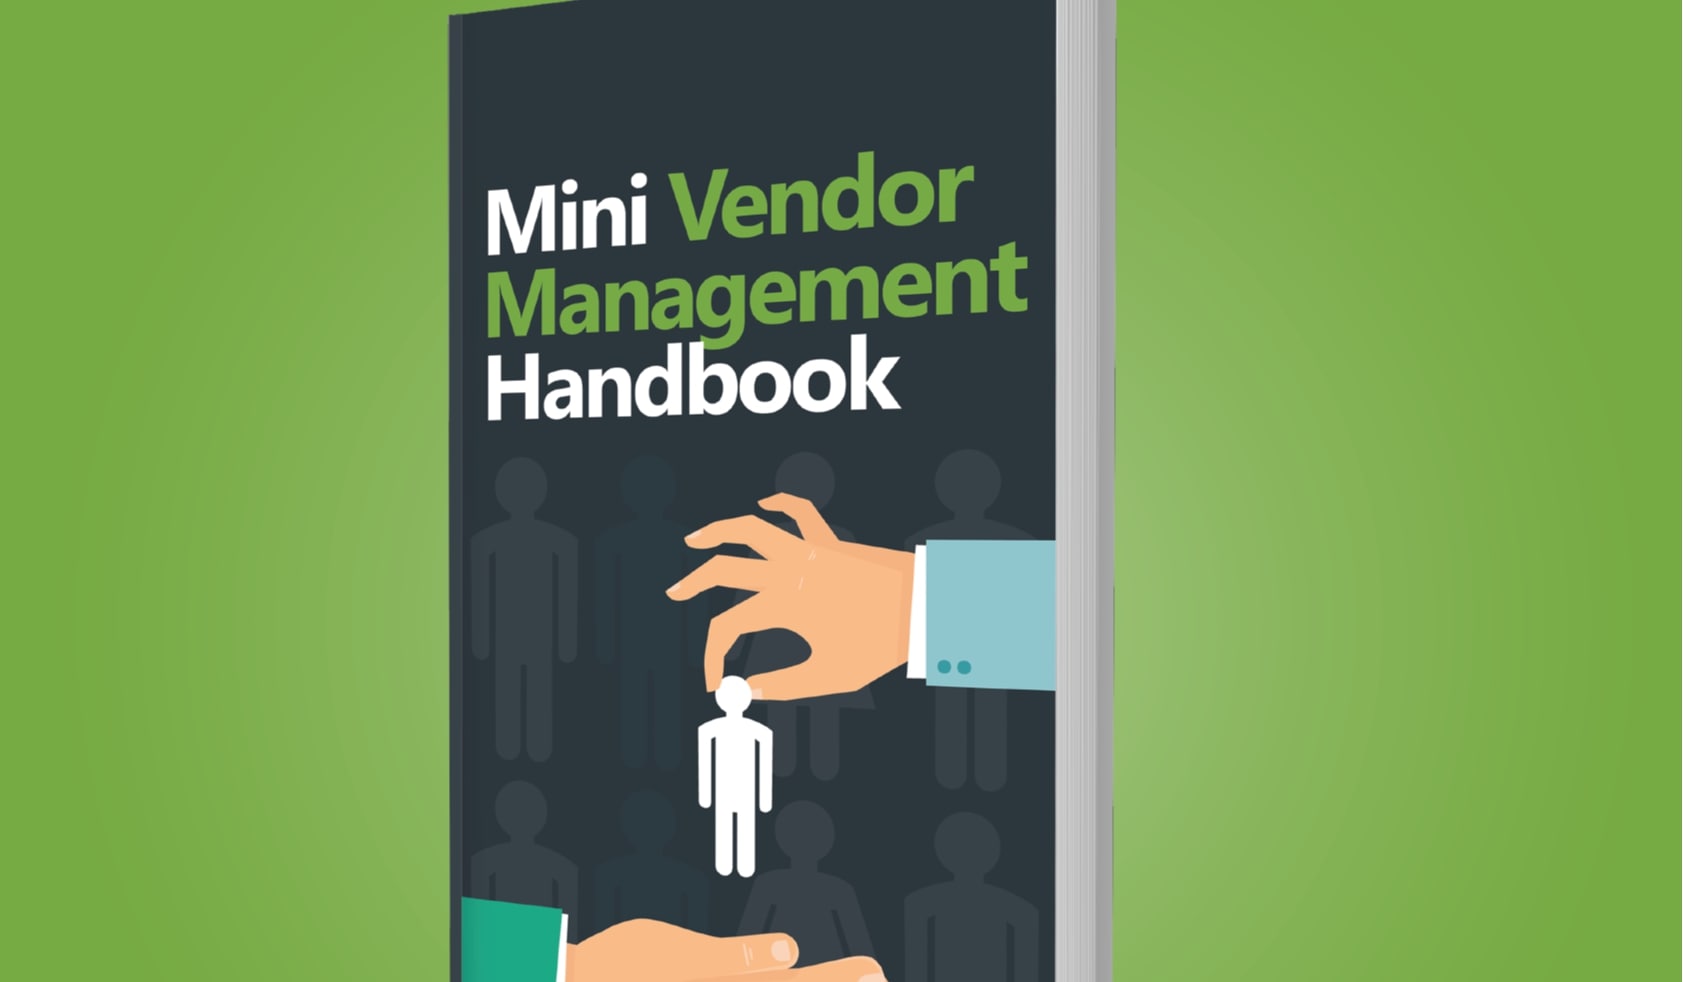 eBook_resources_Mini_Vendor_Management_Handbook.png